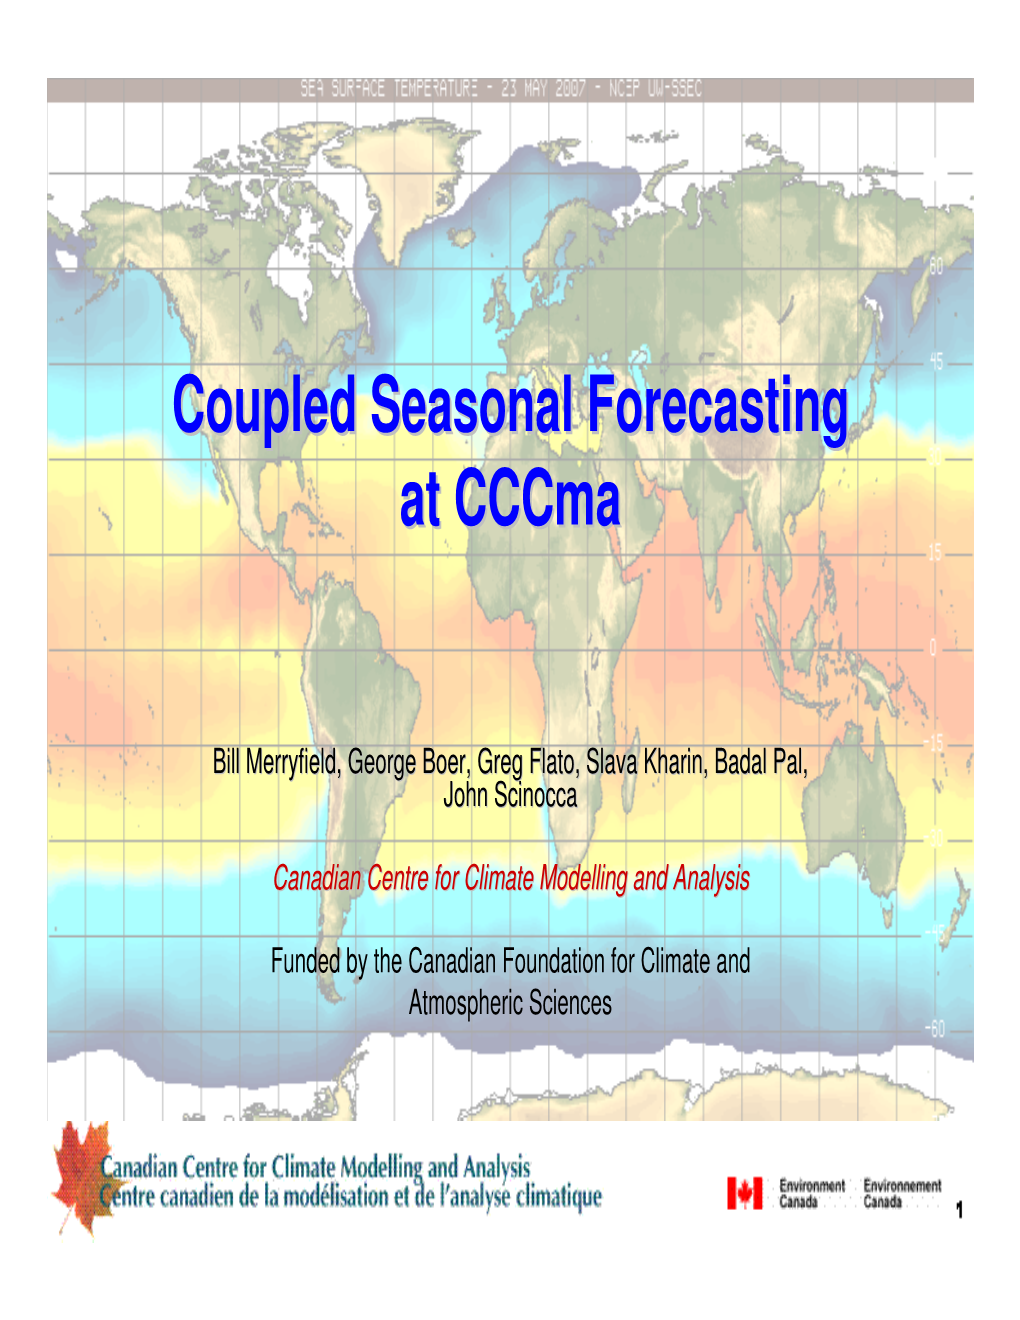 Coupled Seasonal Forecasting at Cccma